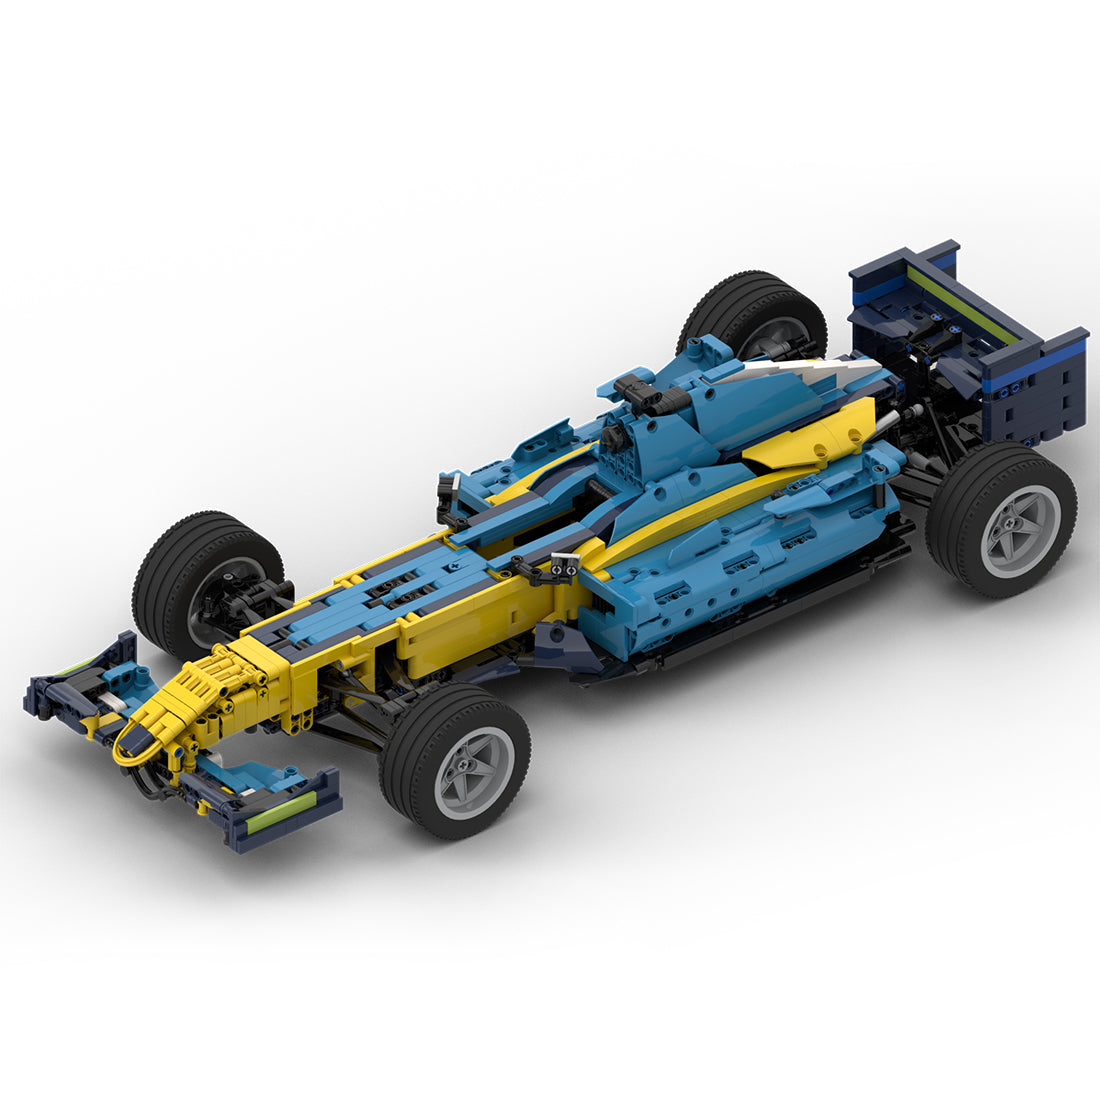 MOC-55175 RS26 Formel-Rennwagen im Maßstab 1:8